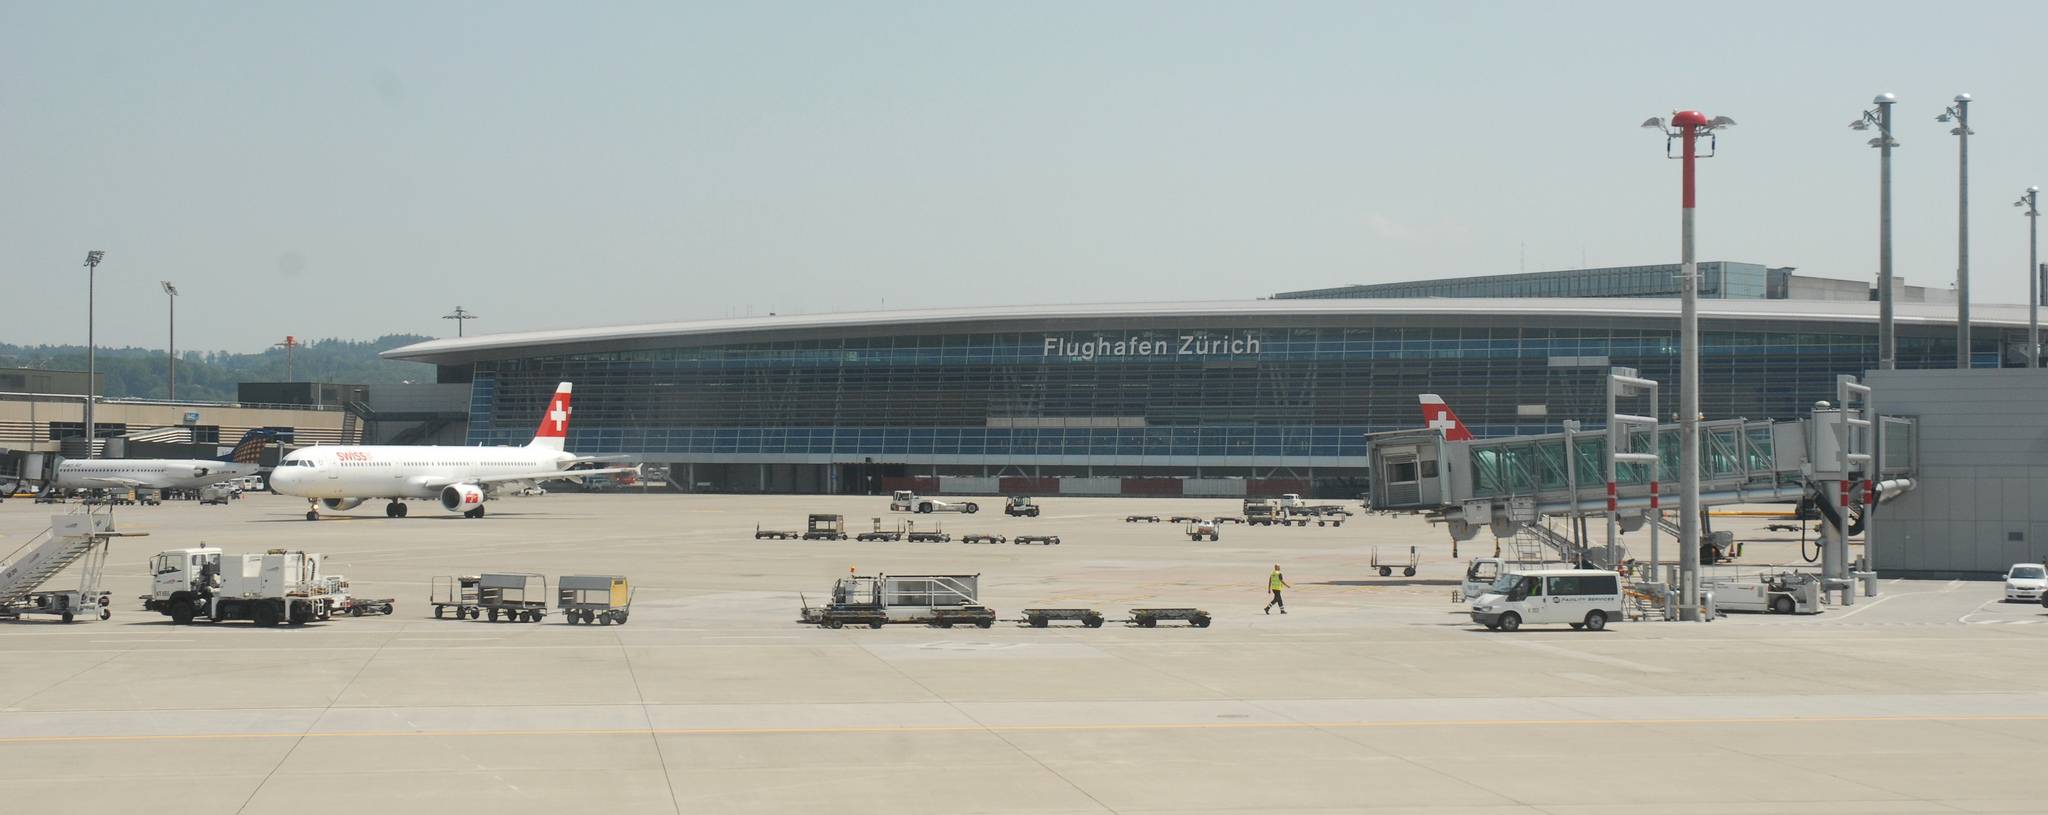 Какой транспорт курсирует между аэропортом и центром цюриха?